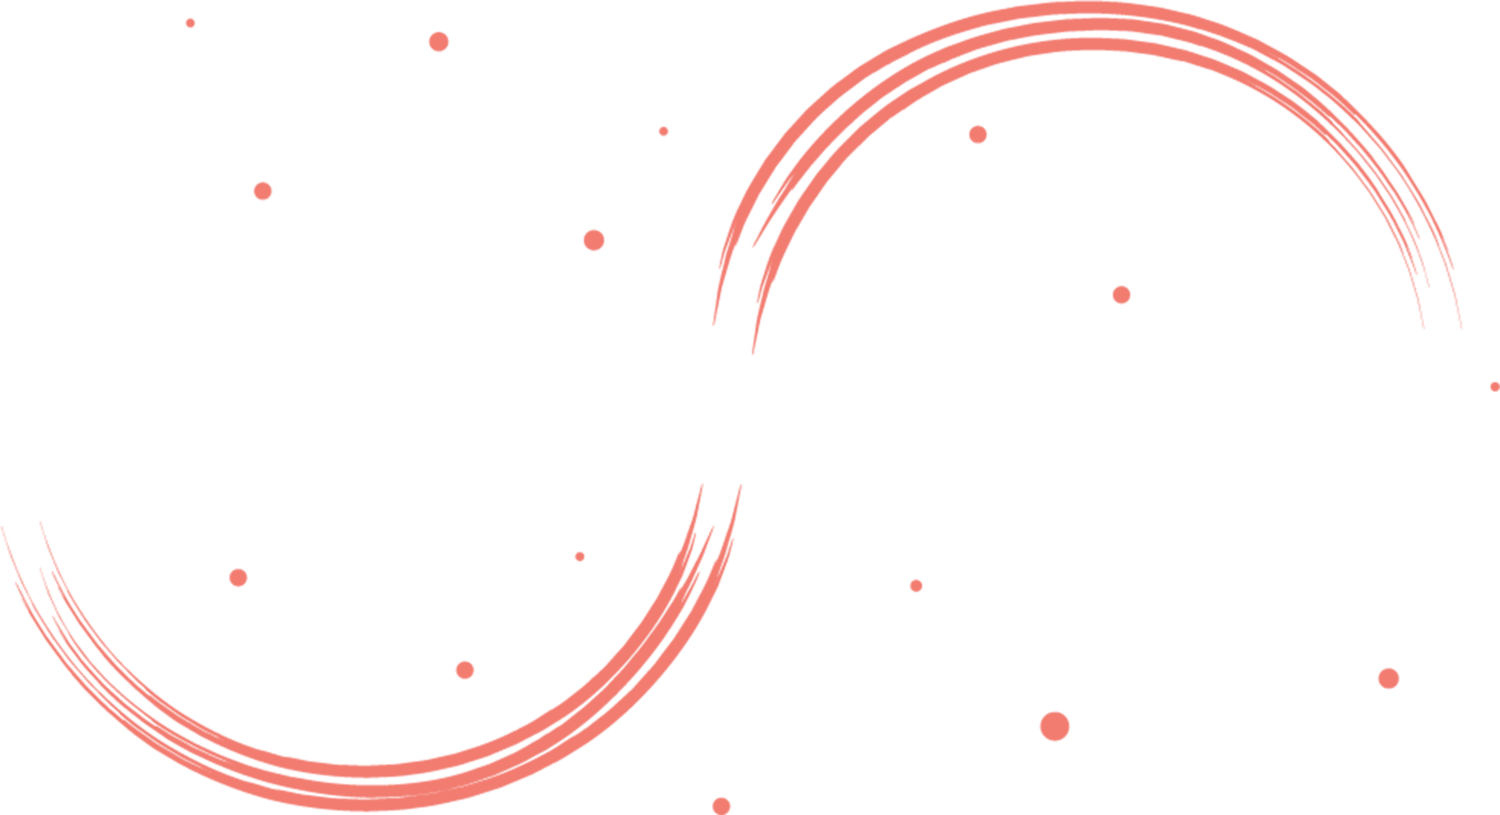 Sherine Burl Marriage Celebrant